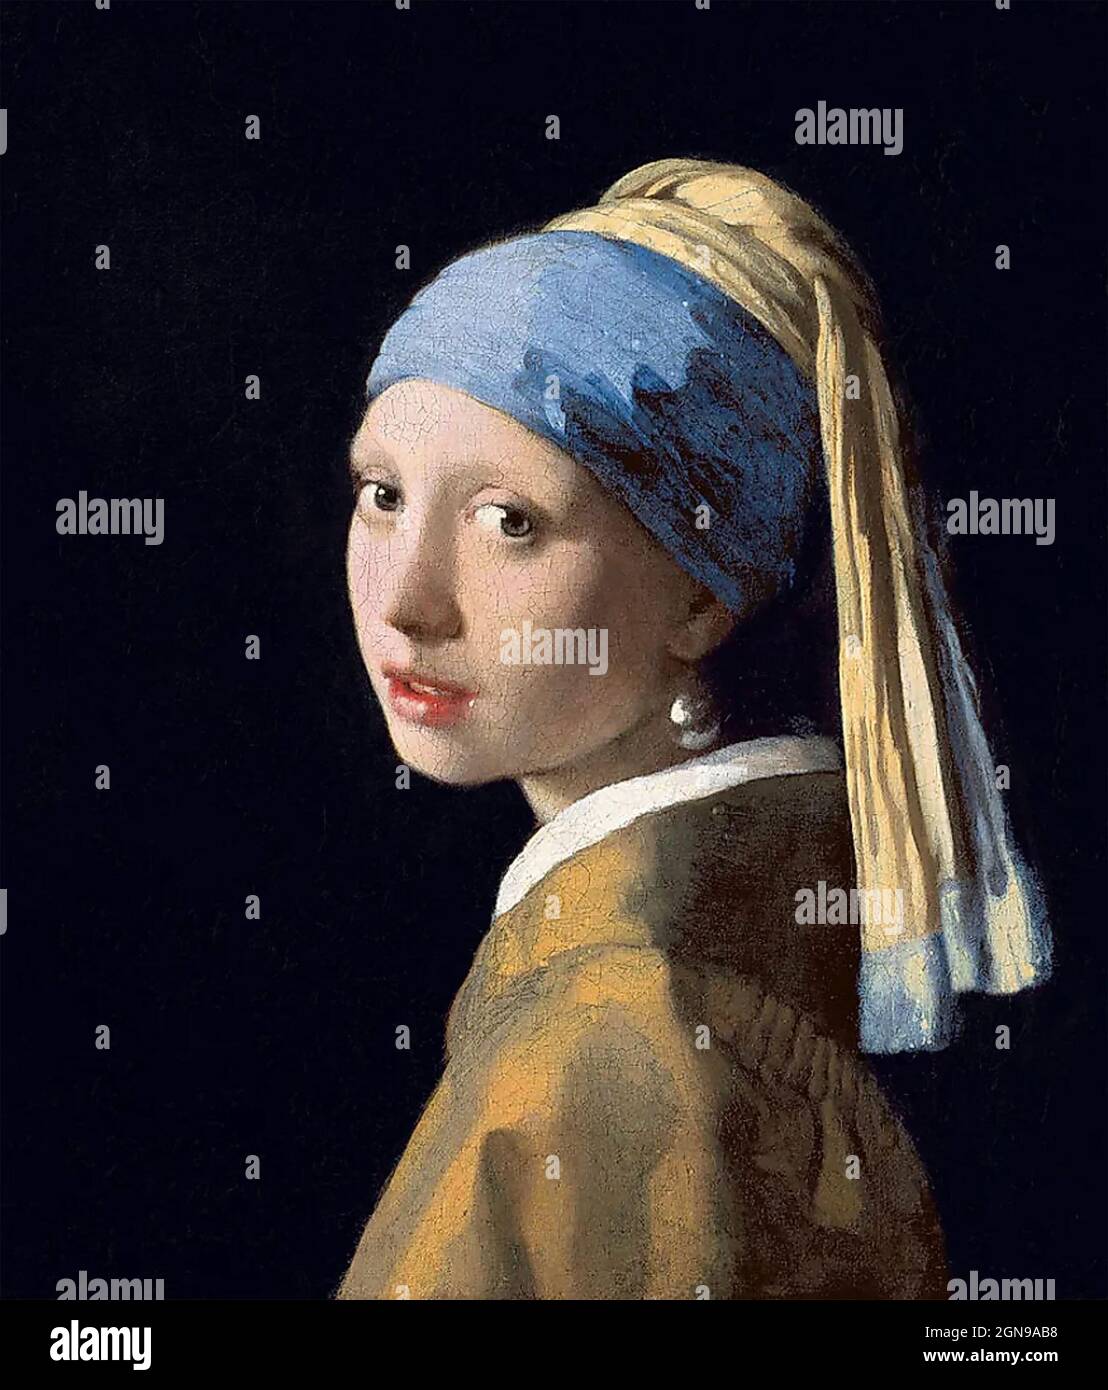 MÄDCHEN MIT Einem PERLENOHRRING, gemalt um 1665 vom niederländischen Künstler Johannes Vermeer (1632-1675) im Mauritshuis, Den Haag, Holland. Stockfoto